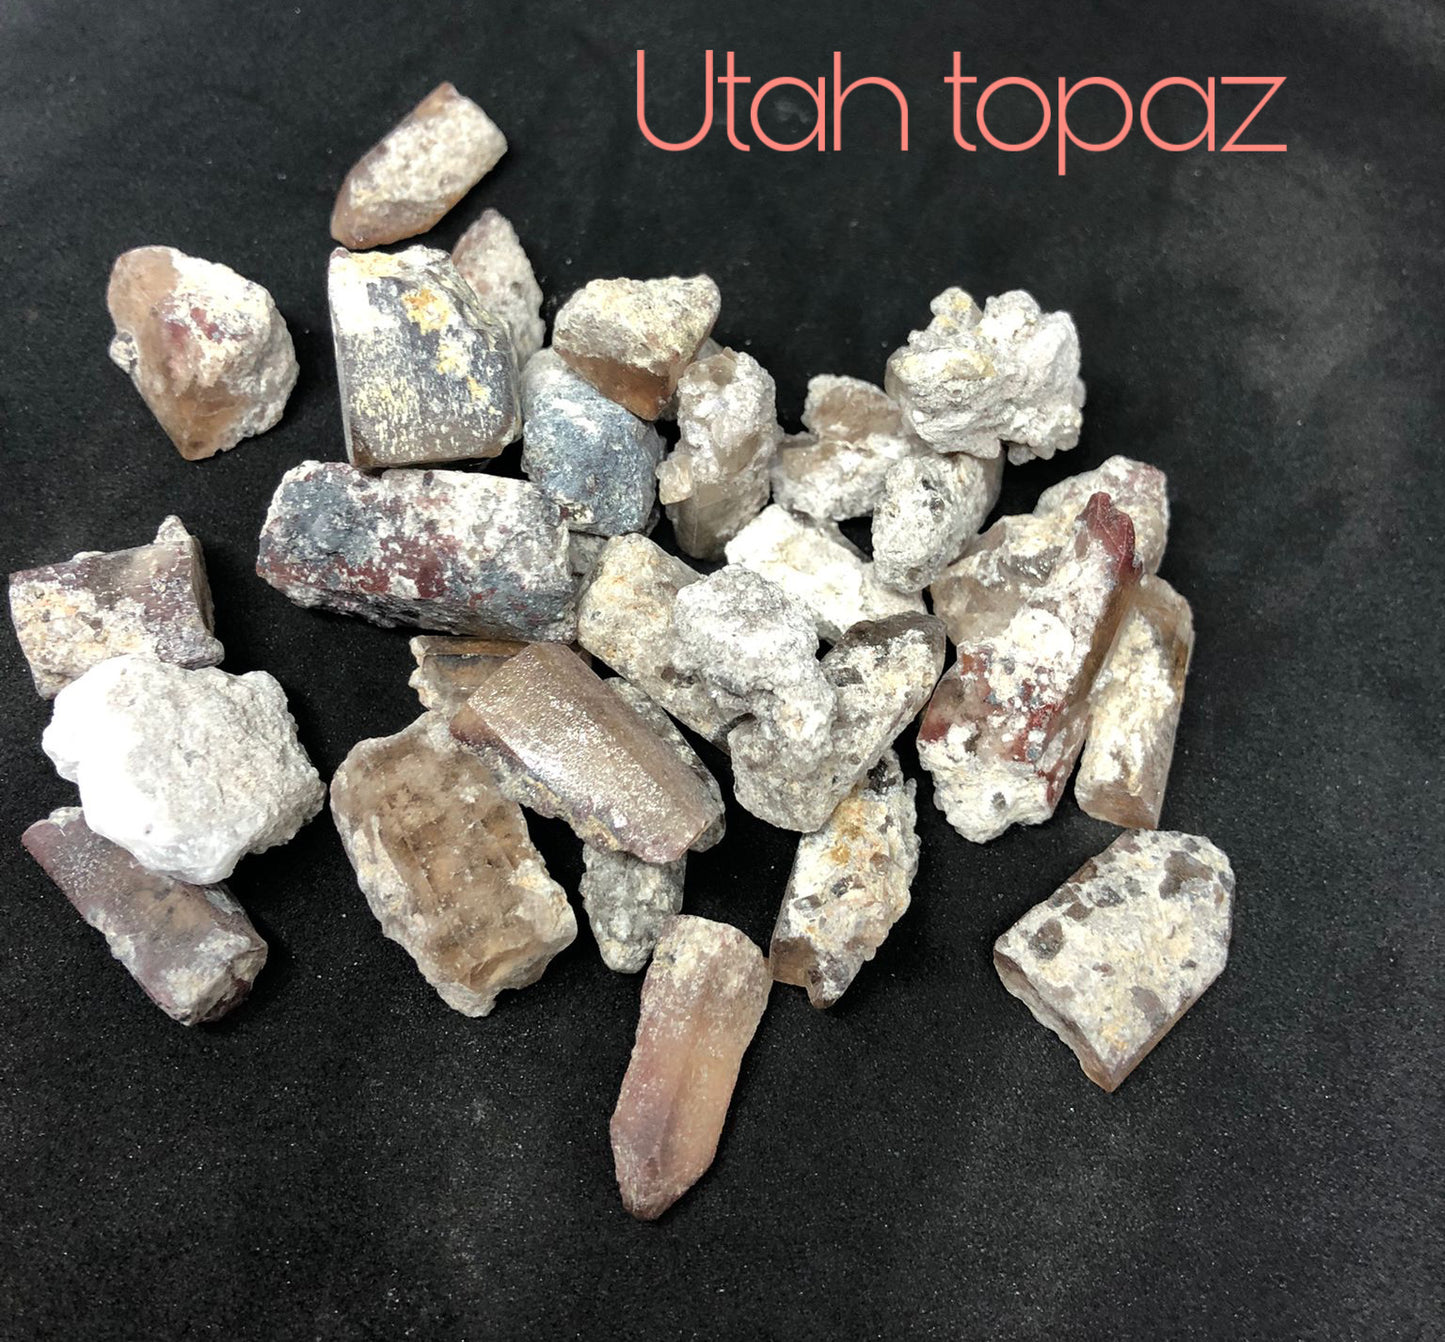 Utah Topaz